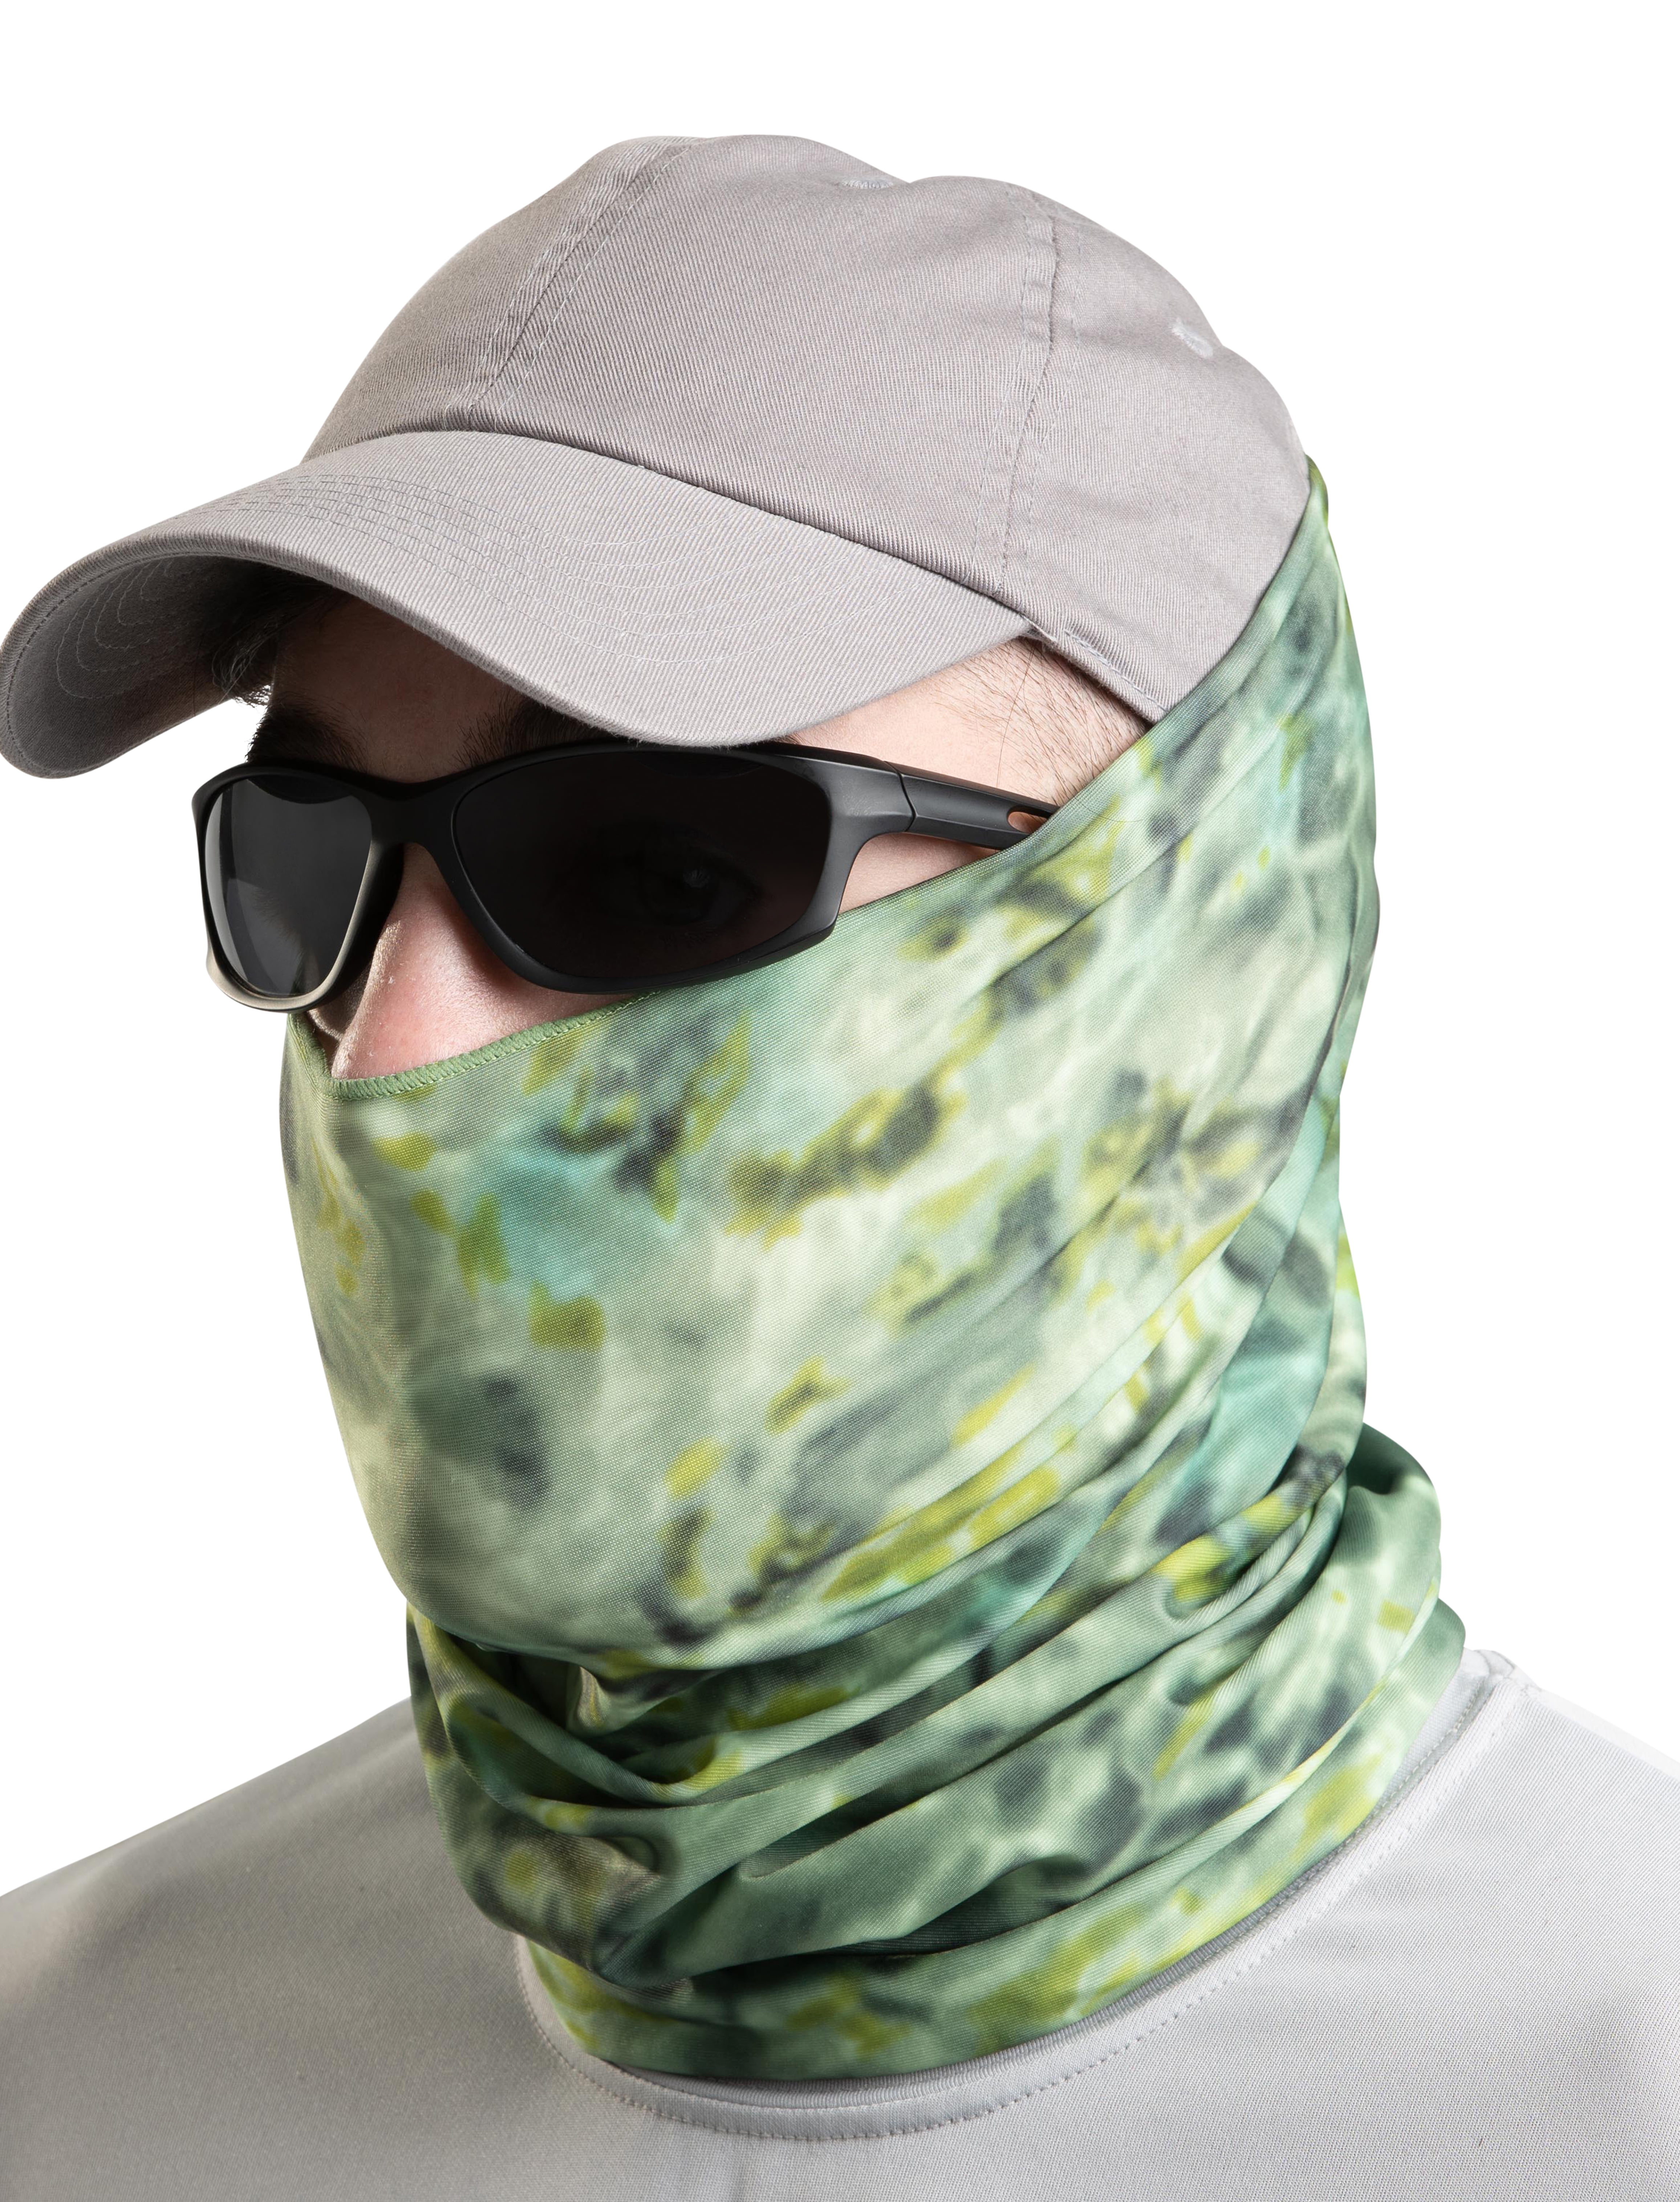 Neck Gaiter Face Mask Balaclava Bandana Scarf Fishing Sun Headwear Protection SA 